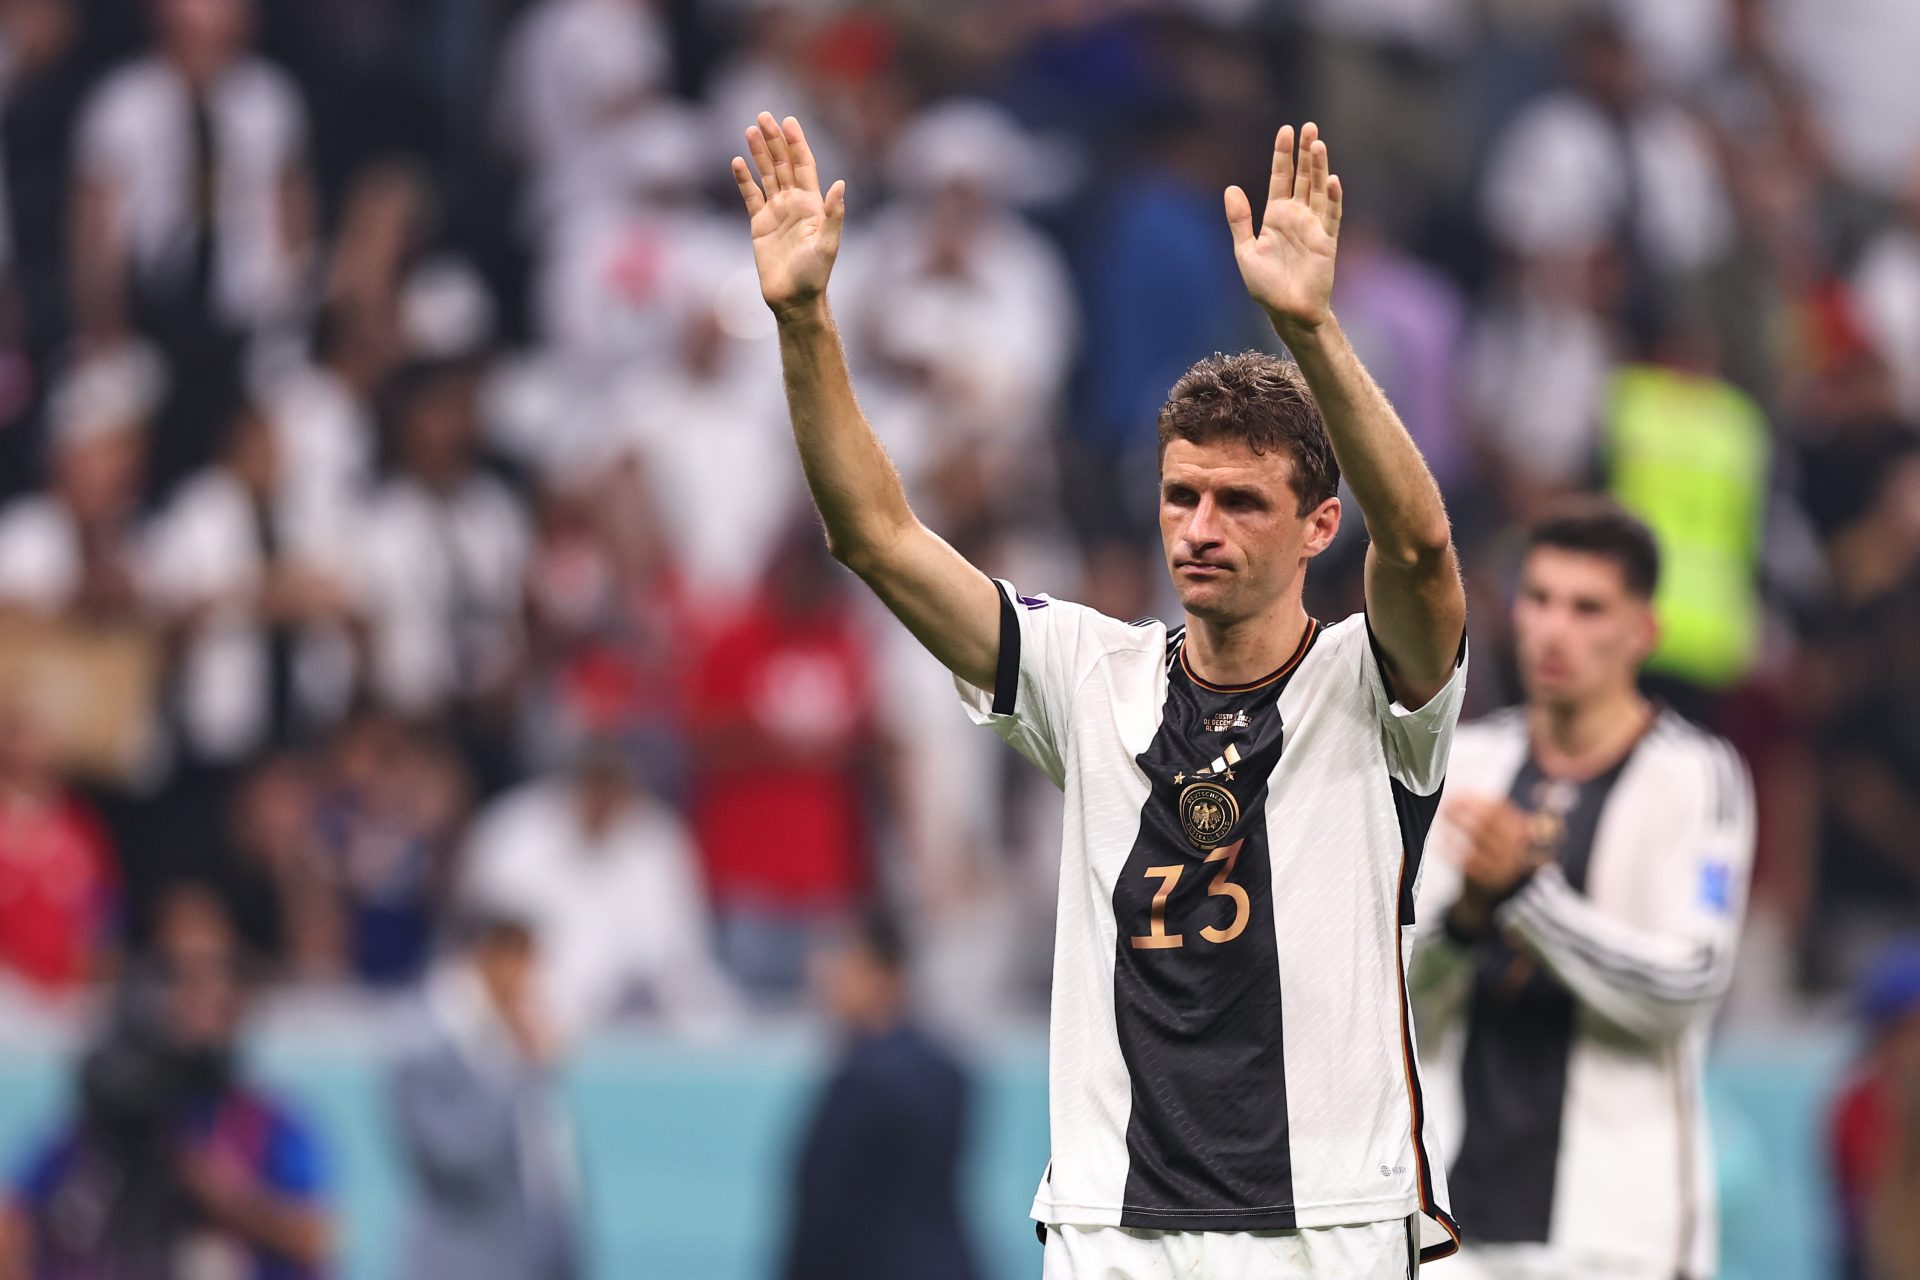 <p>Een speler die vaak wordt vergeten, maar de belichaming is van het succes van het Duitse voetbal in het vorige decennium. Thomas Müller is compleet en veelzijdig, brak door op het WK 2010 en won de volgende editie in Brazilië met de Mannschaft. Hij is ook een van de steunpilaren van het grote Bayern München, tien jaar lang ononderbroken Duits kampioen en winnaar van de Champions League in 2013 en 2020. Müller won in totaal 31 trofeeën op clubniveau.</p>